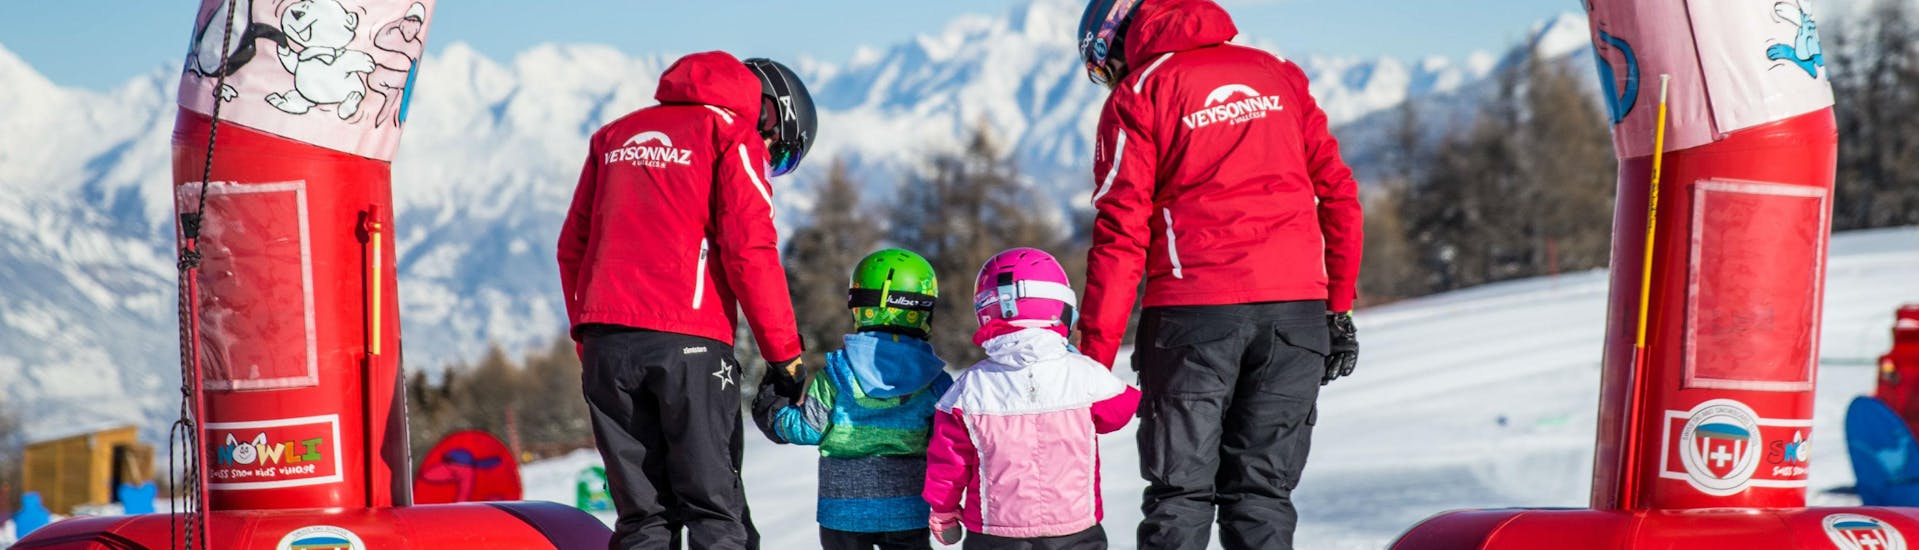 Cours de ski Enfants (3-5 ans) - Journée avec École Suisse de Ski de Veysonnaz - Hero image